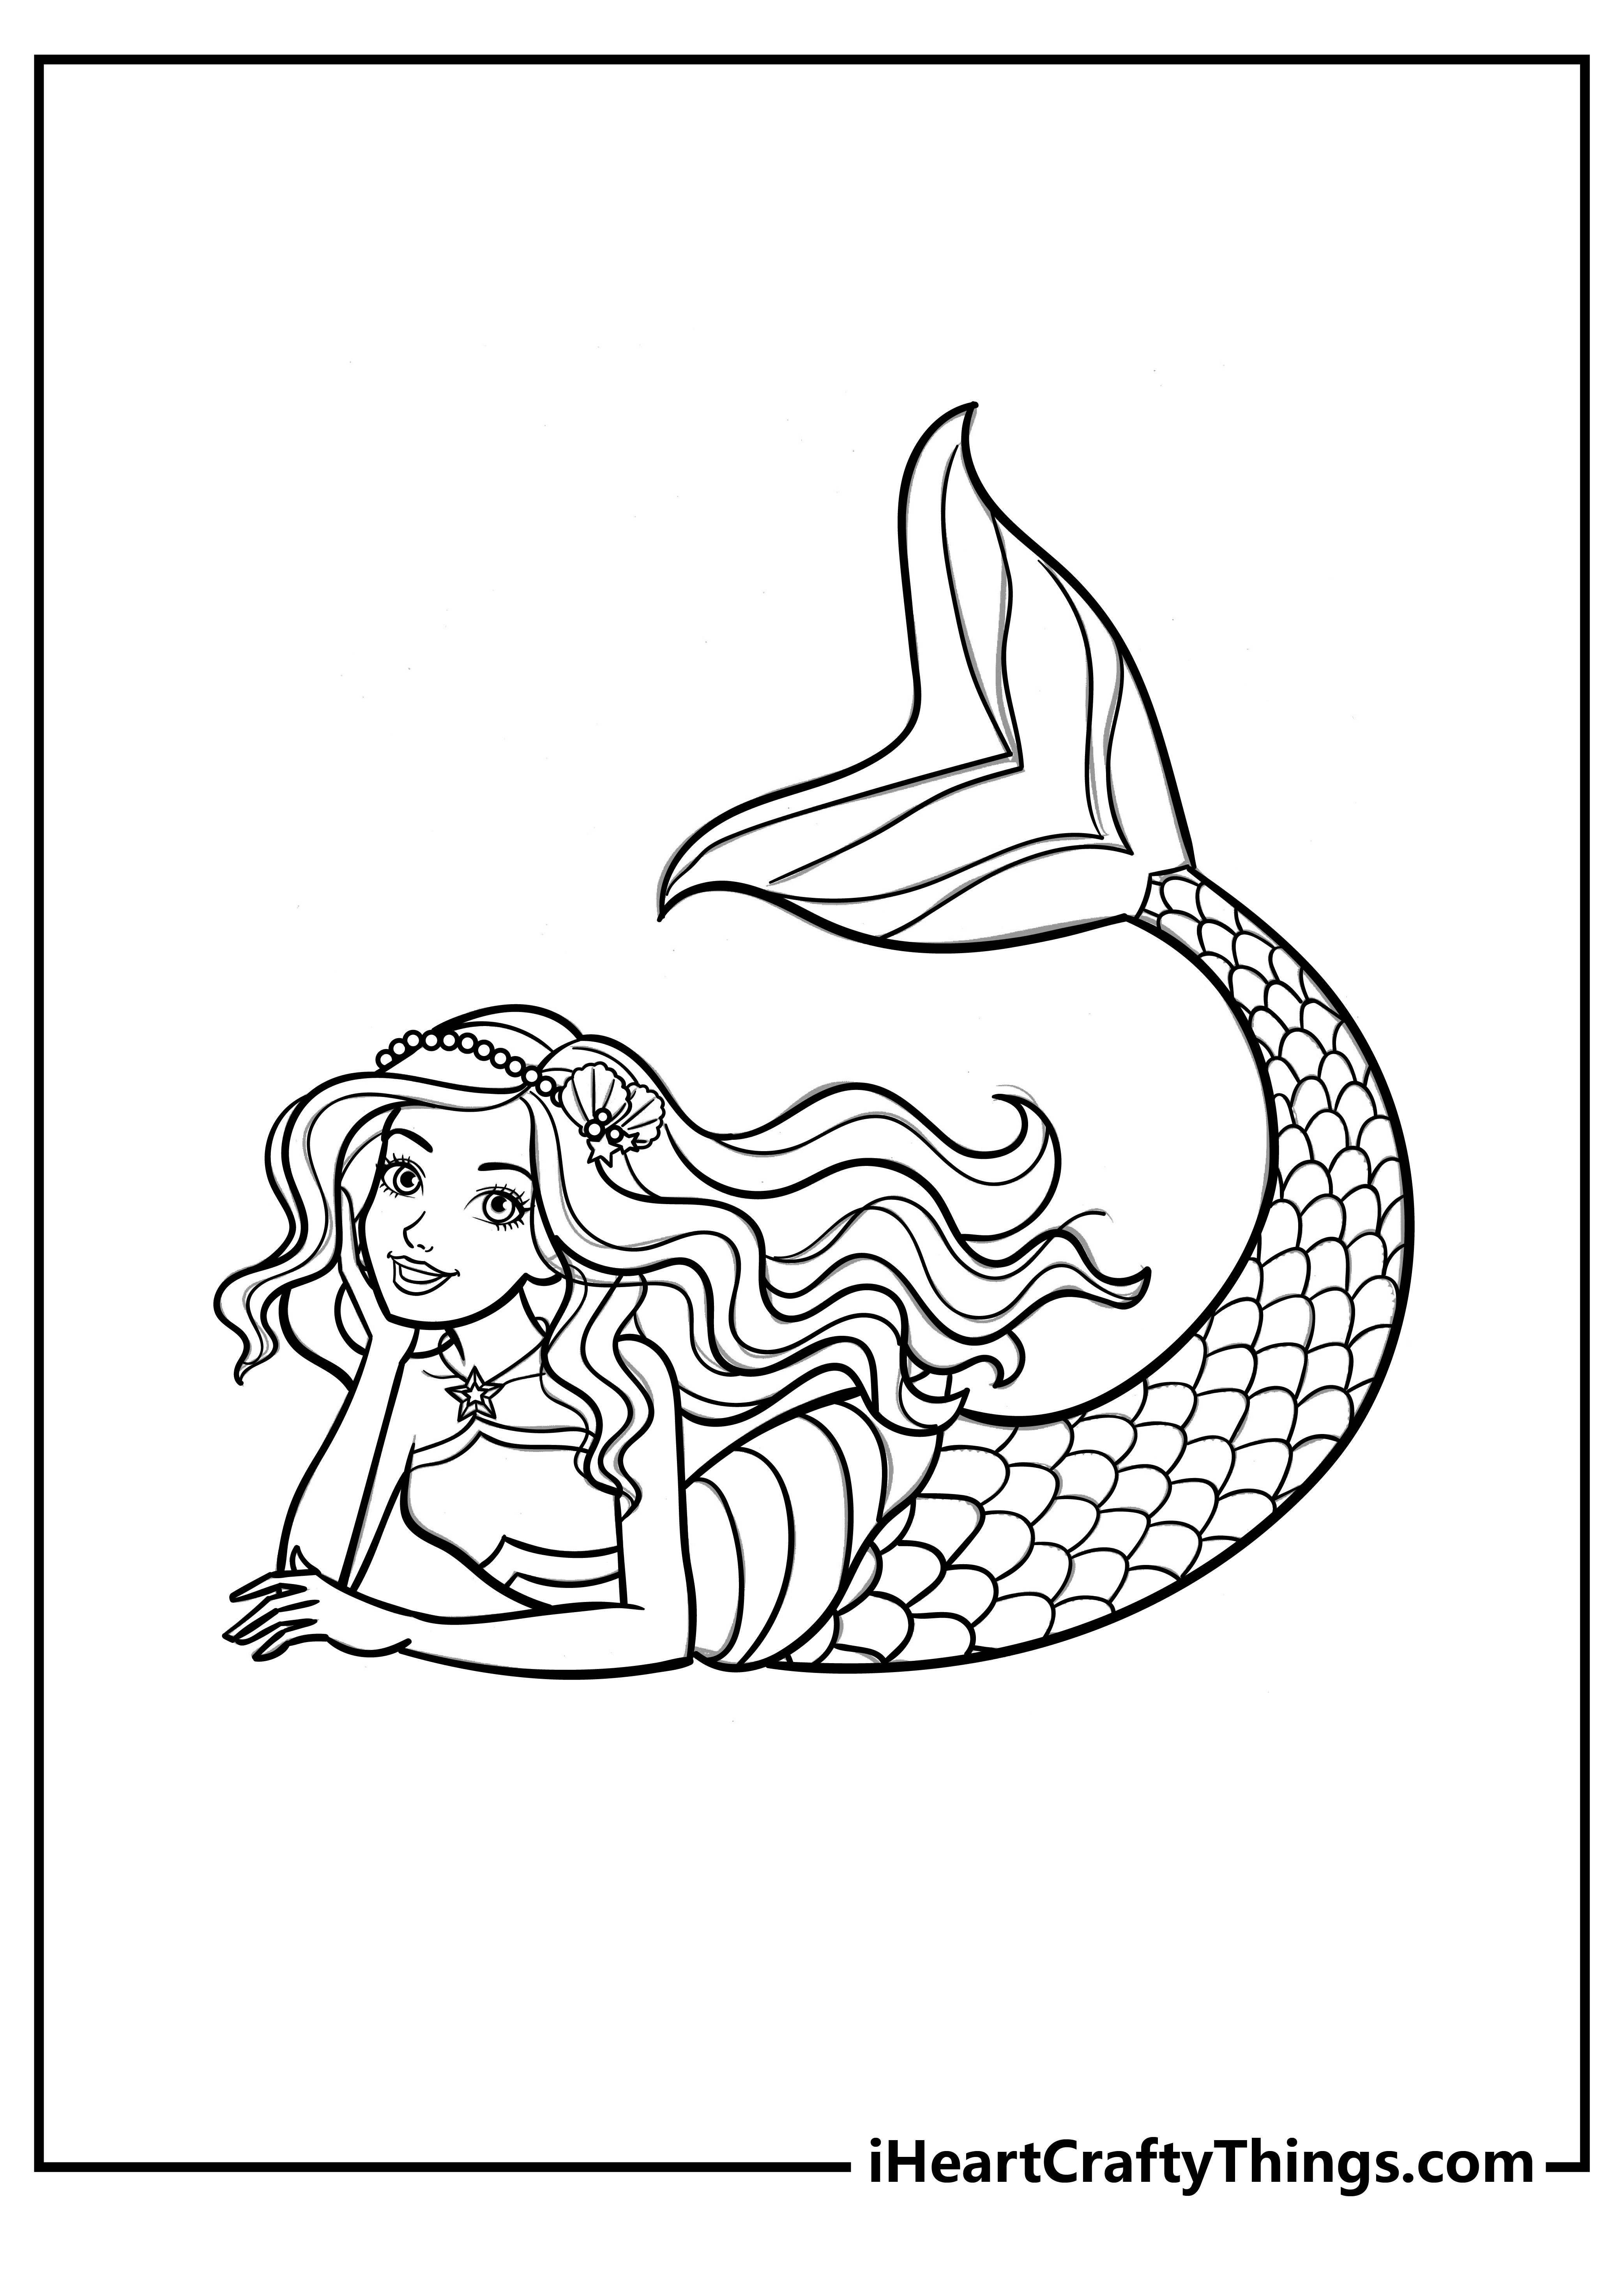 Printable Barbie Mermaid Coloring Pages Updated 20